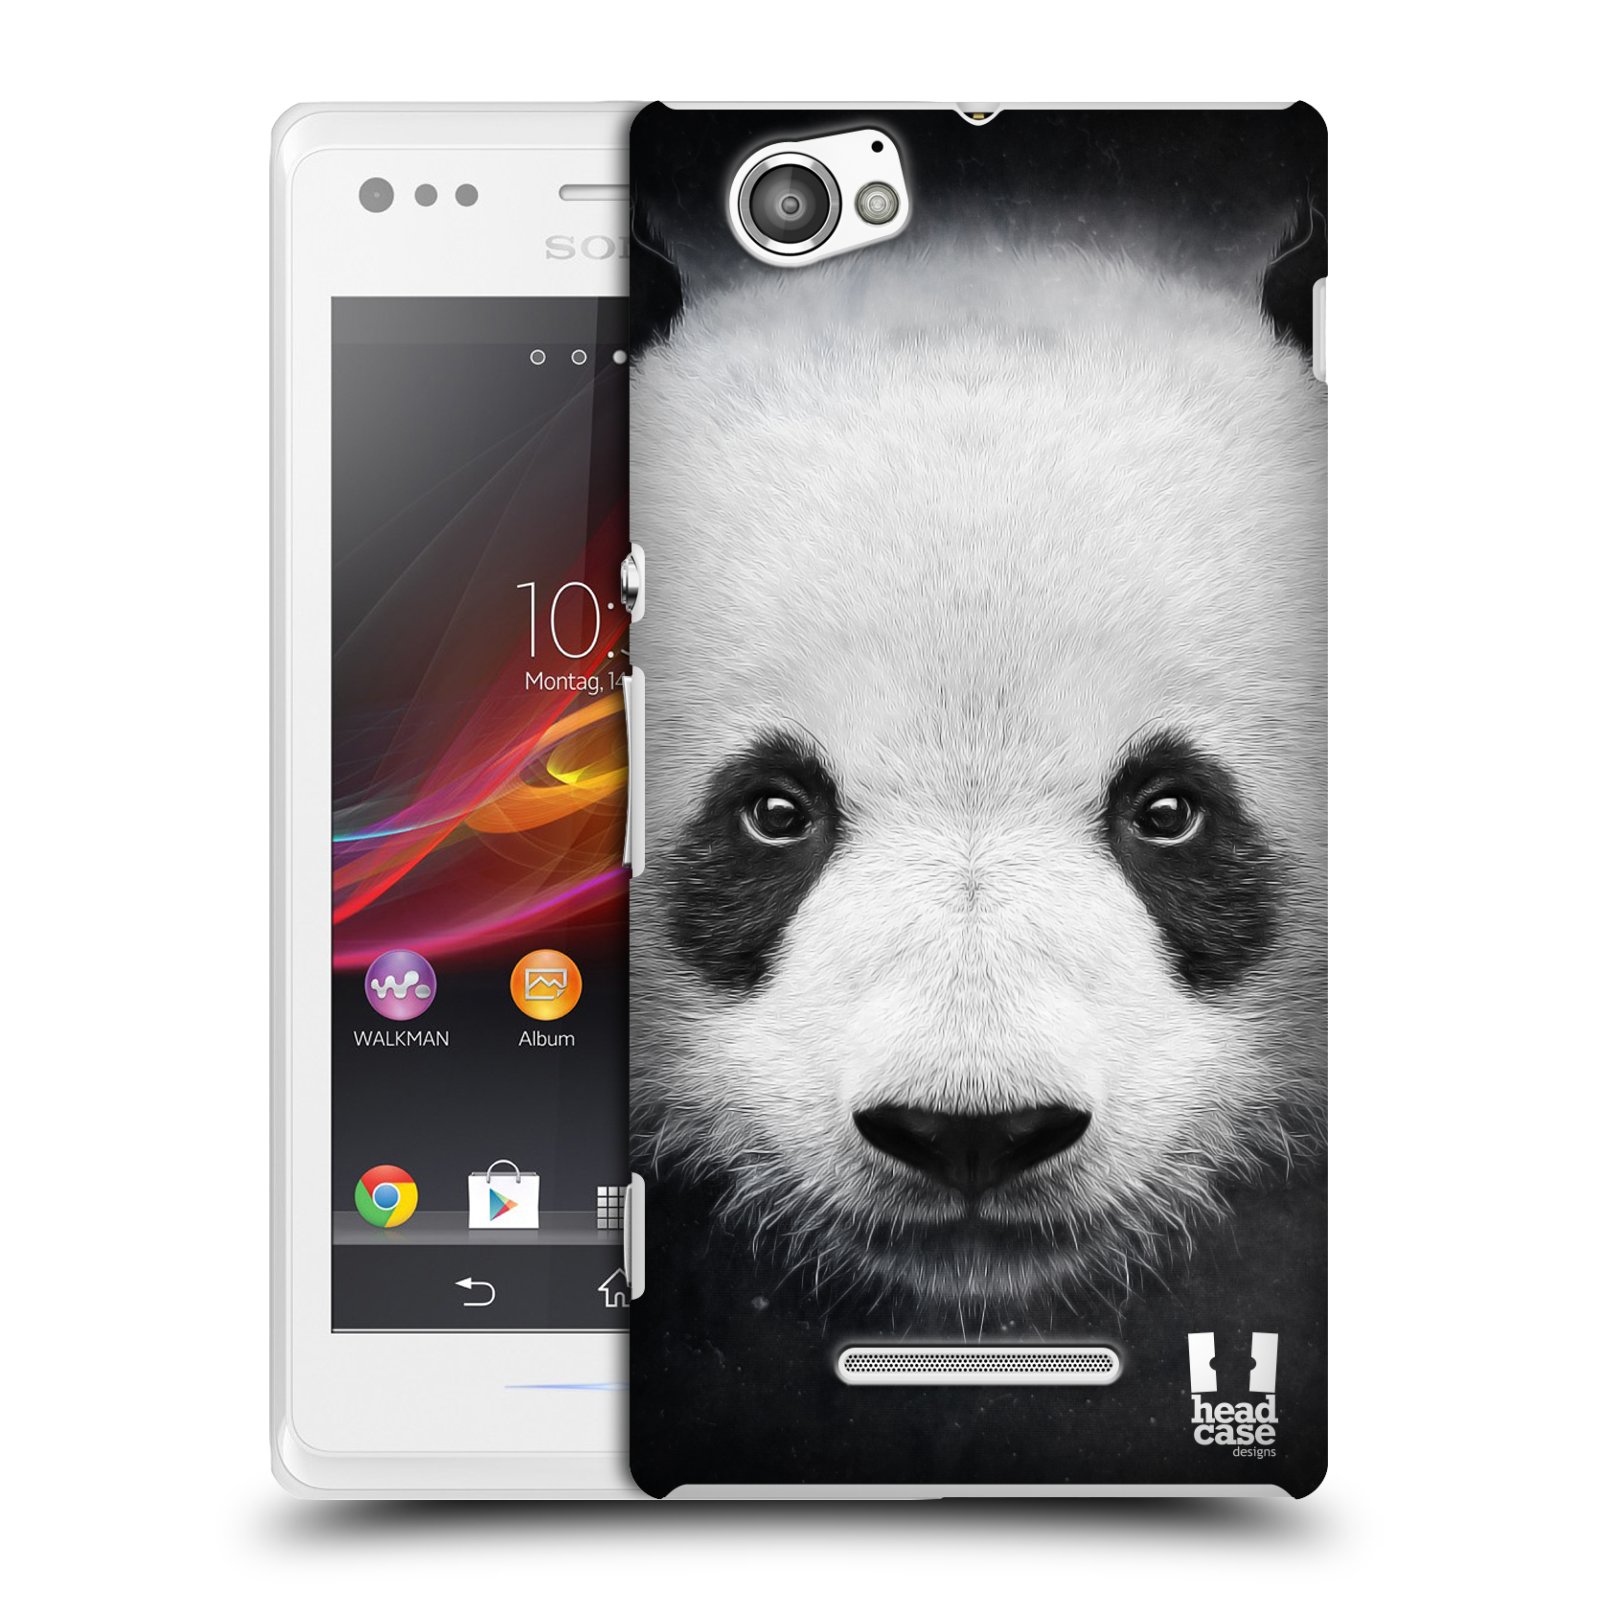 HEAD CASE plastový obal na mobil Sony Xperia M vzor Zvířecí tváře medvěd panda